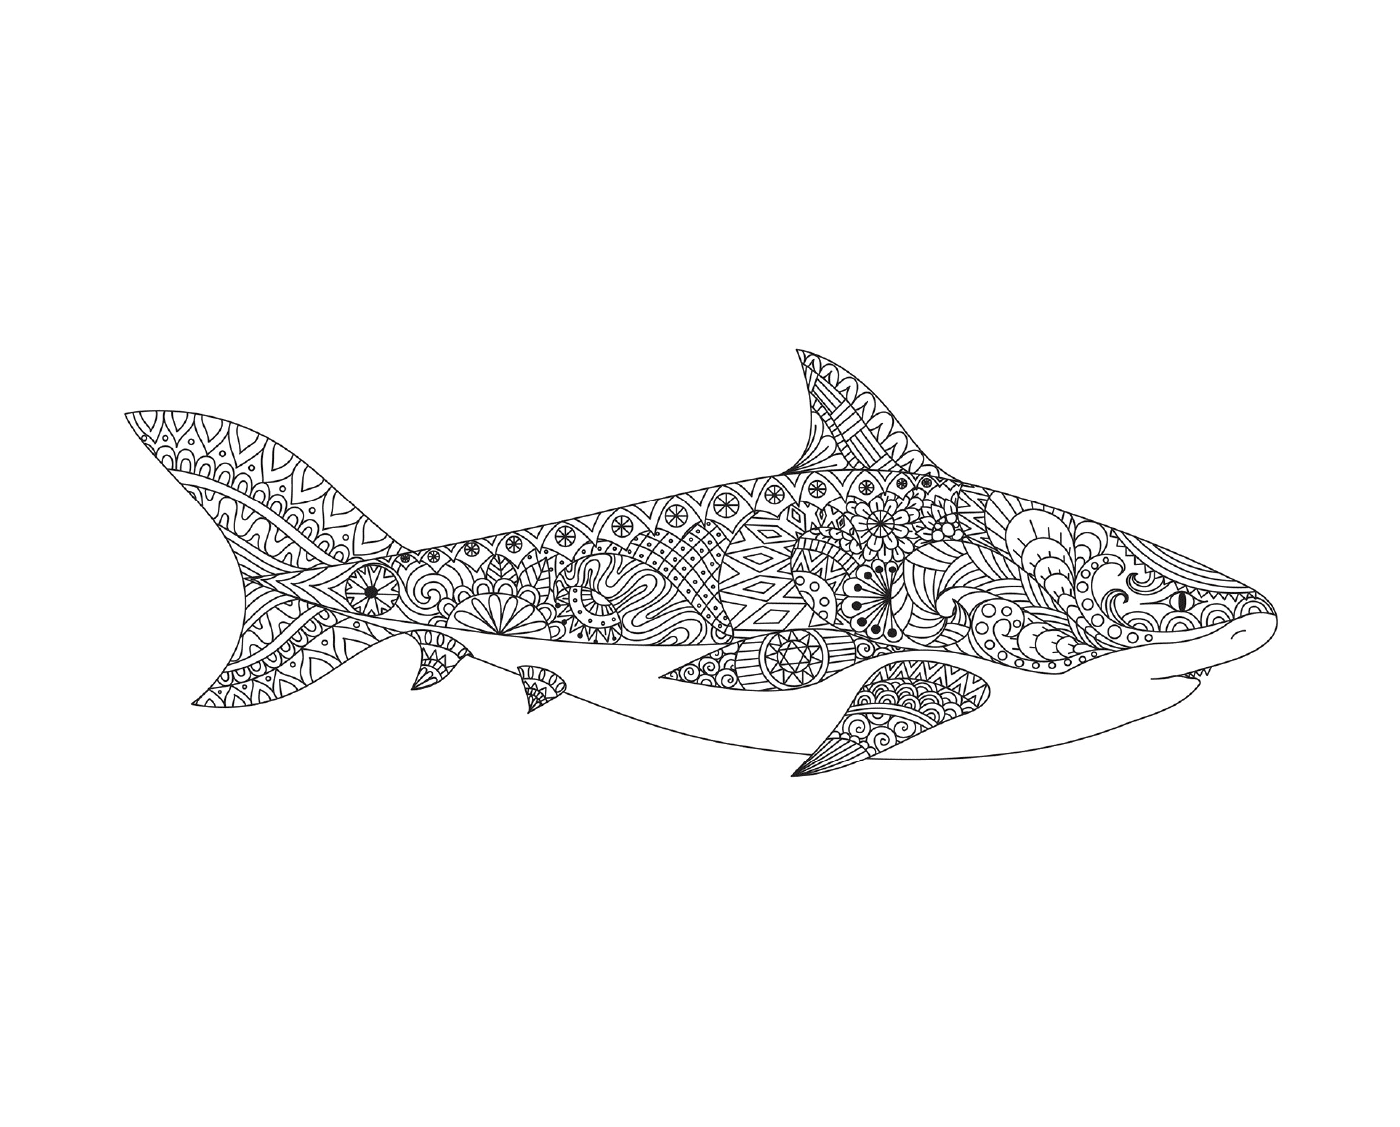  una representación tatuada de un tiburón adulto con la boca abierta 